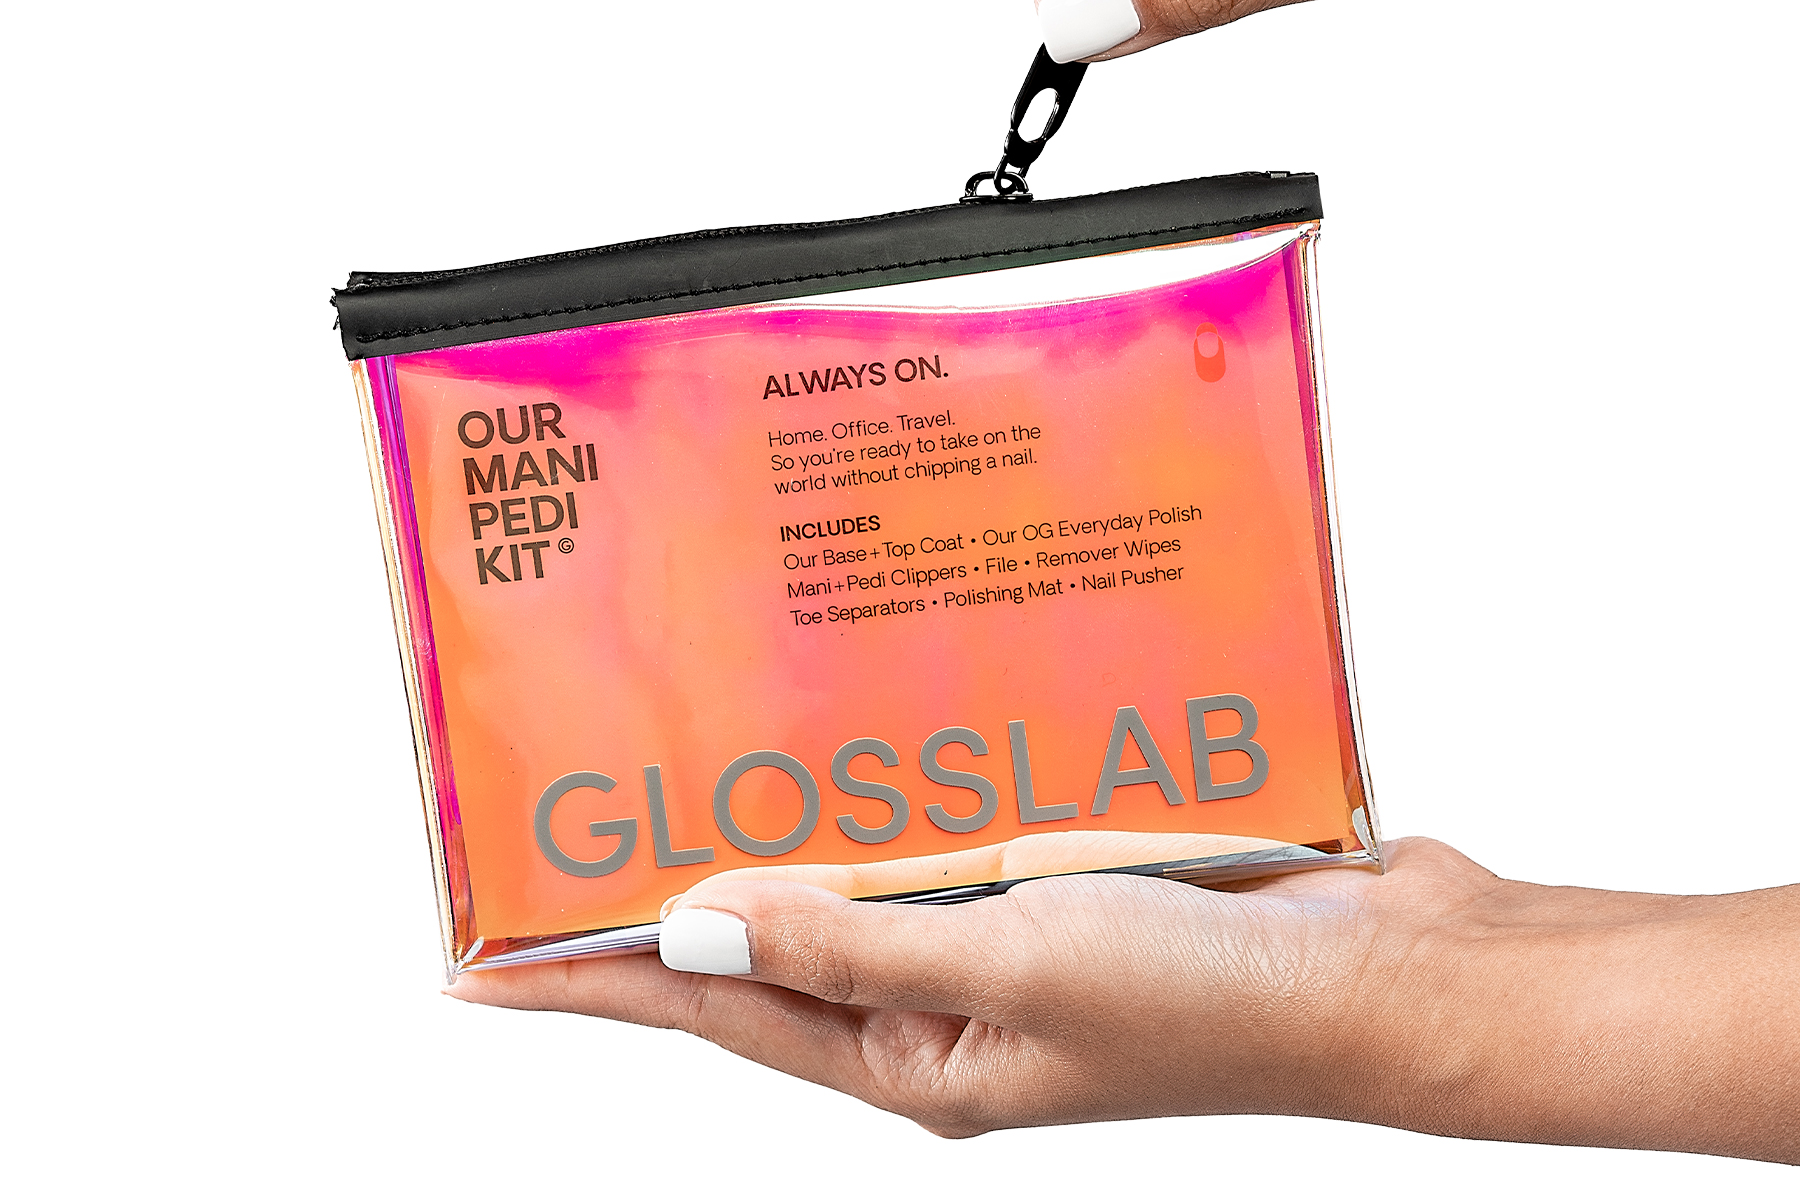 Mani & Pedi Kit from Gloss Lab